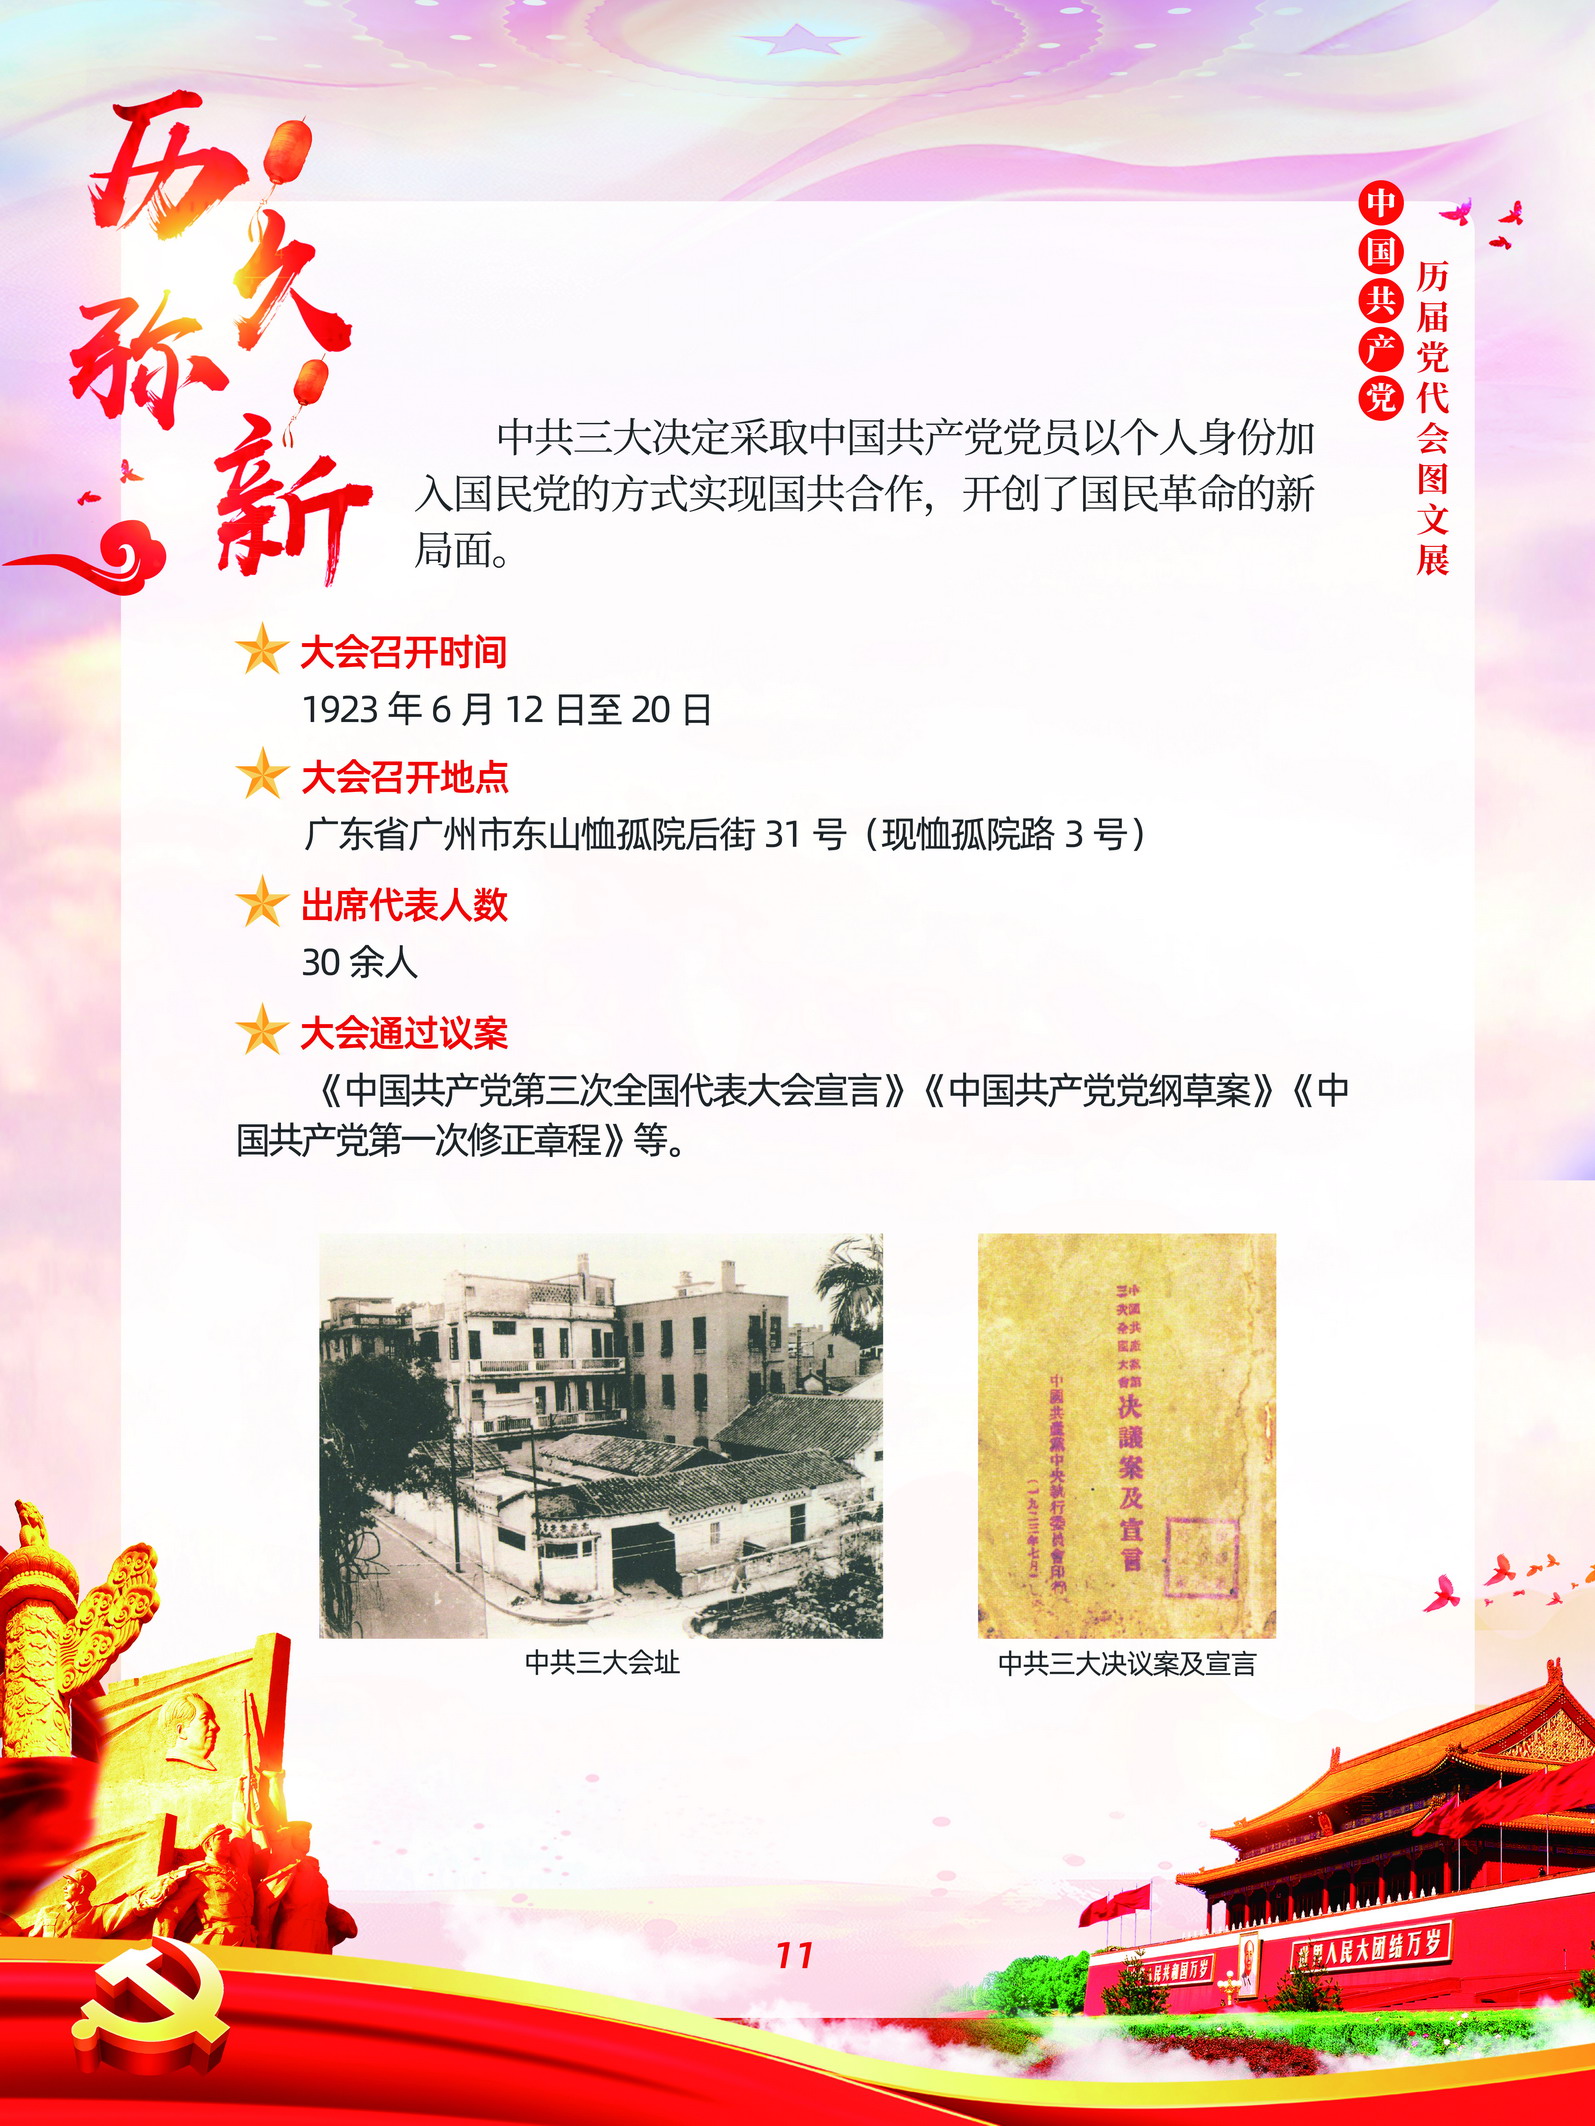 中国共产党历届党代会图文展_图10